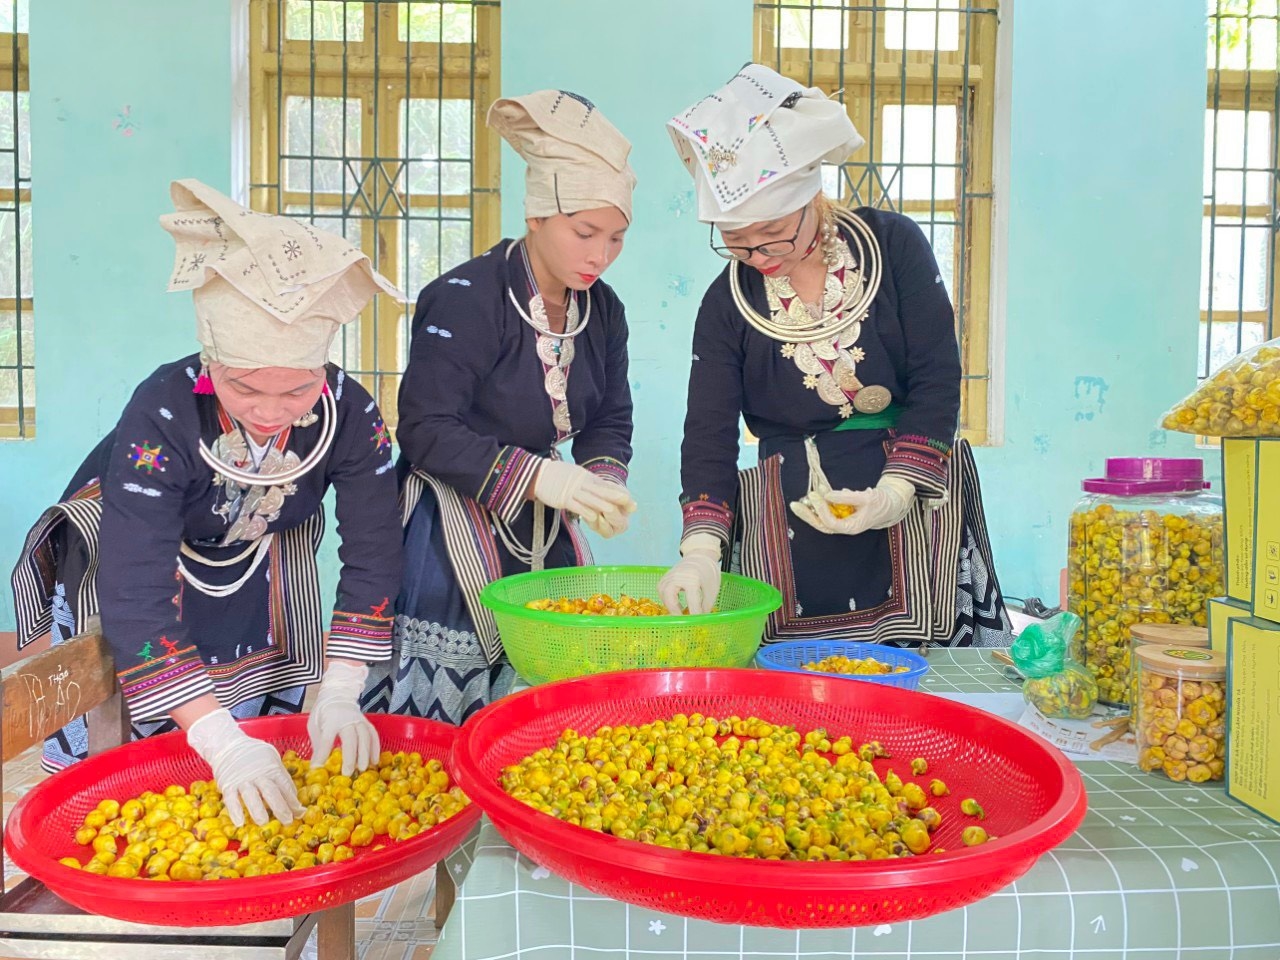 Chế biến trà hoa vàng tại HTX nông lâm Nghĩa Tá, huyện Chợ Đồn.